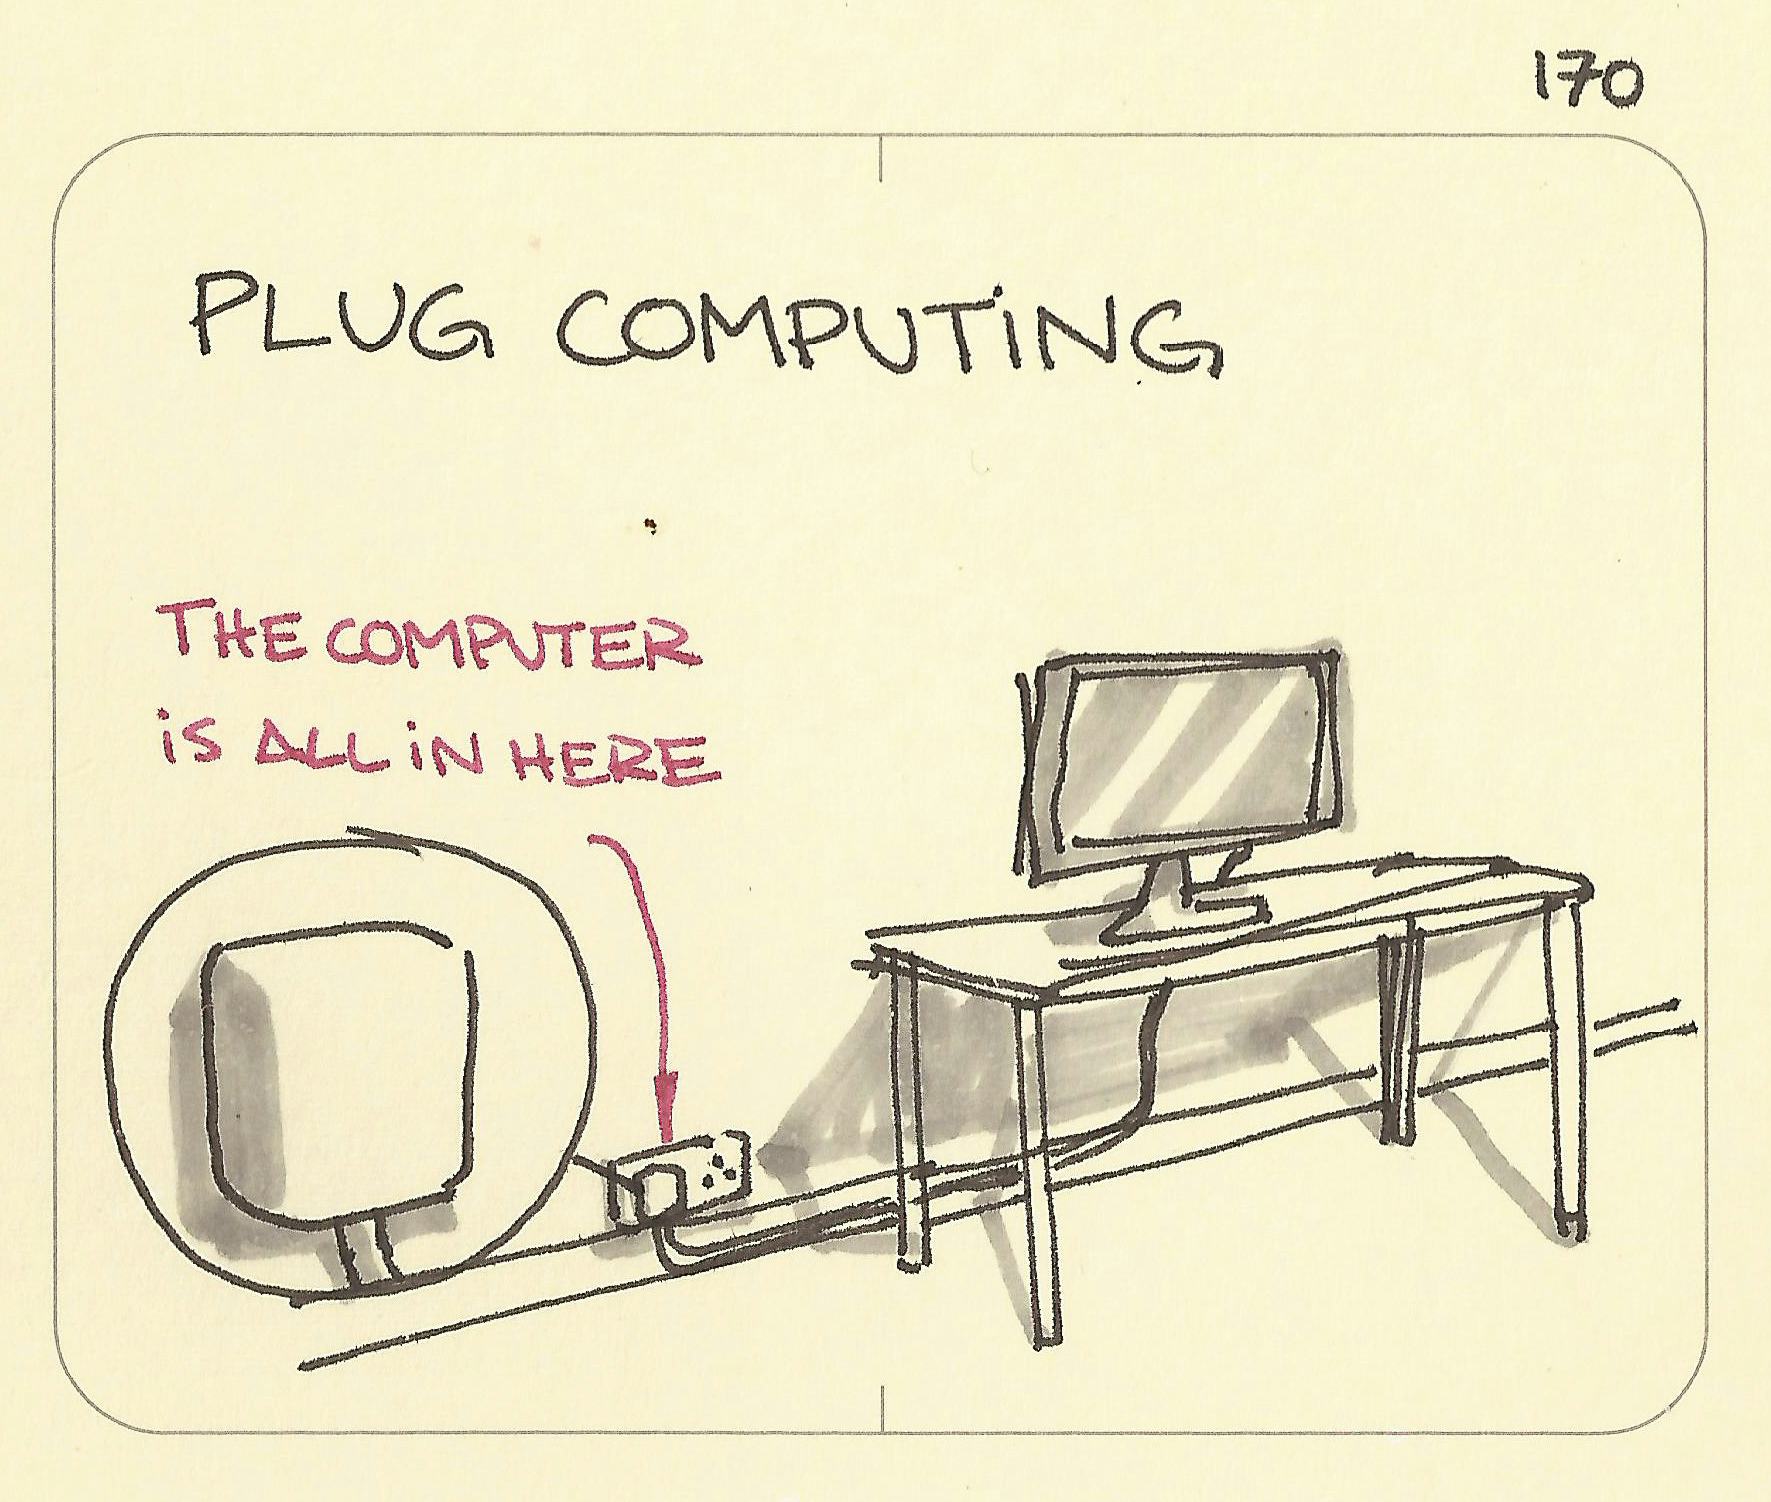 Plug computing - Sketchplanations